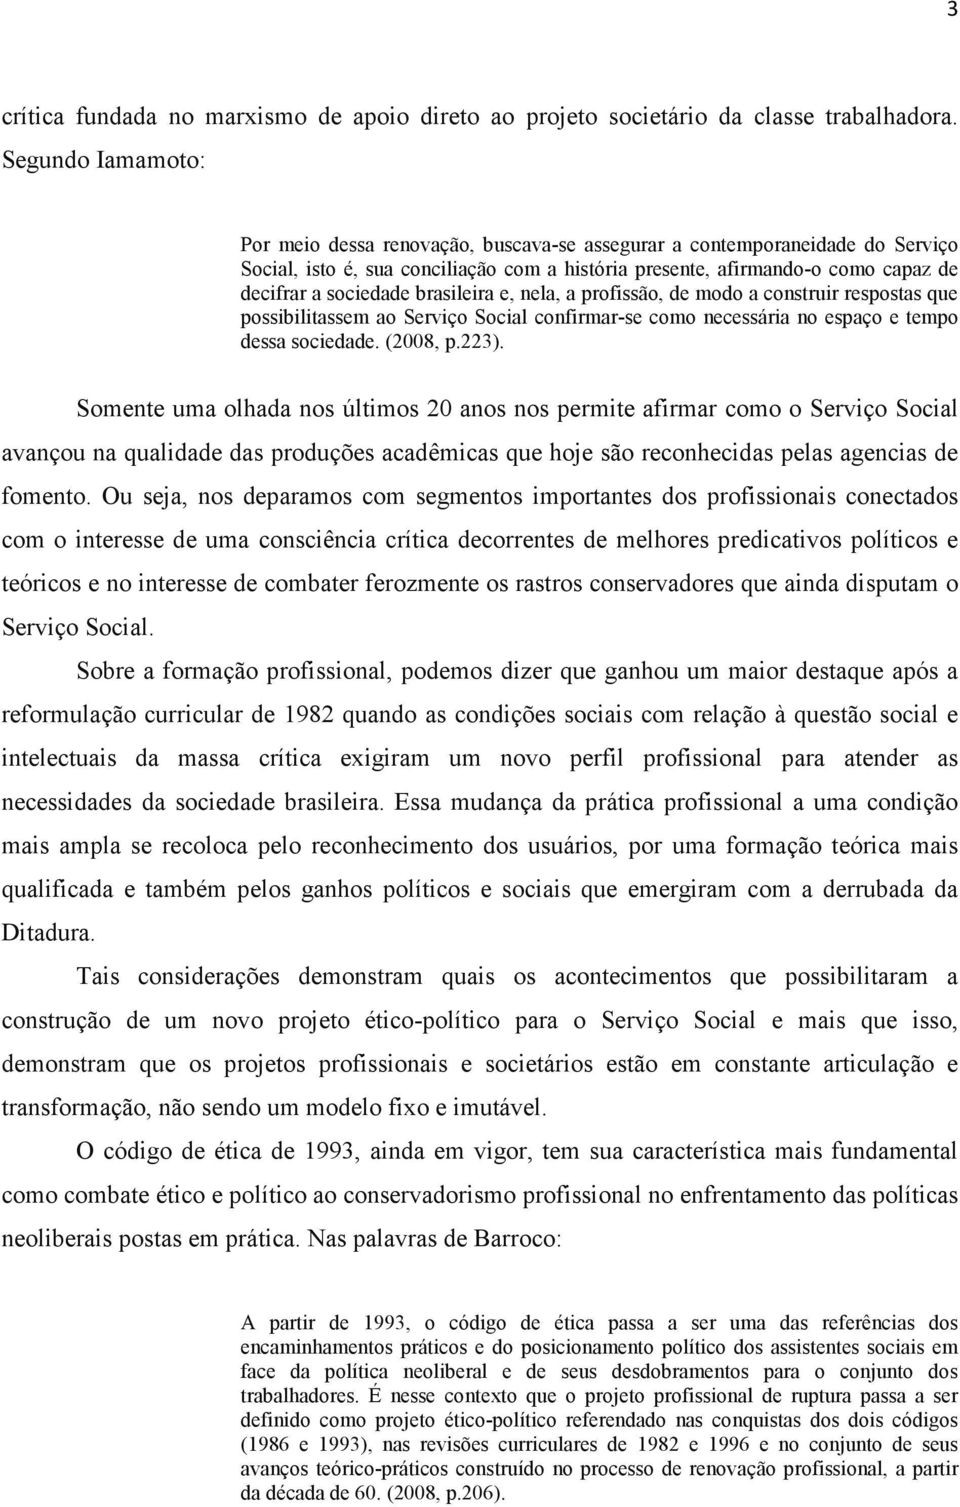 brasileira e, nela, a profissão, de modo a construir respostas que possibilitassem ao Serviço Social confirmar-se como necessária no espaço e tempo dessa sociedade. (2008, p.223).